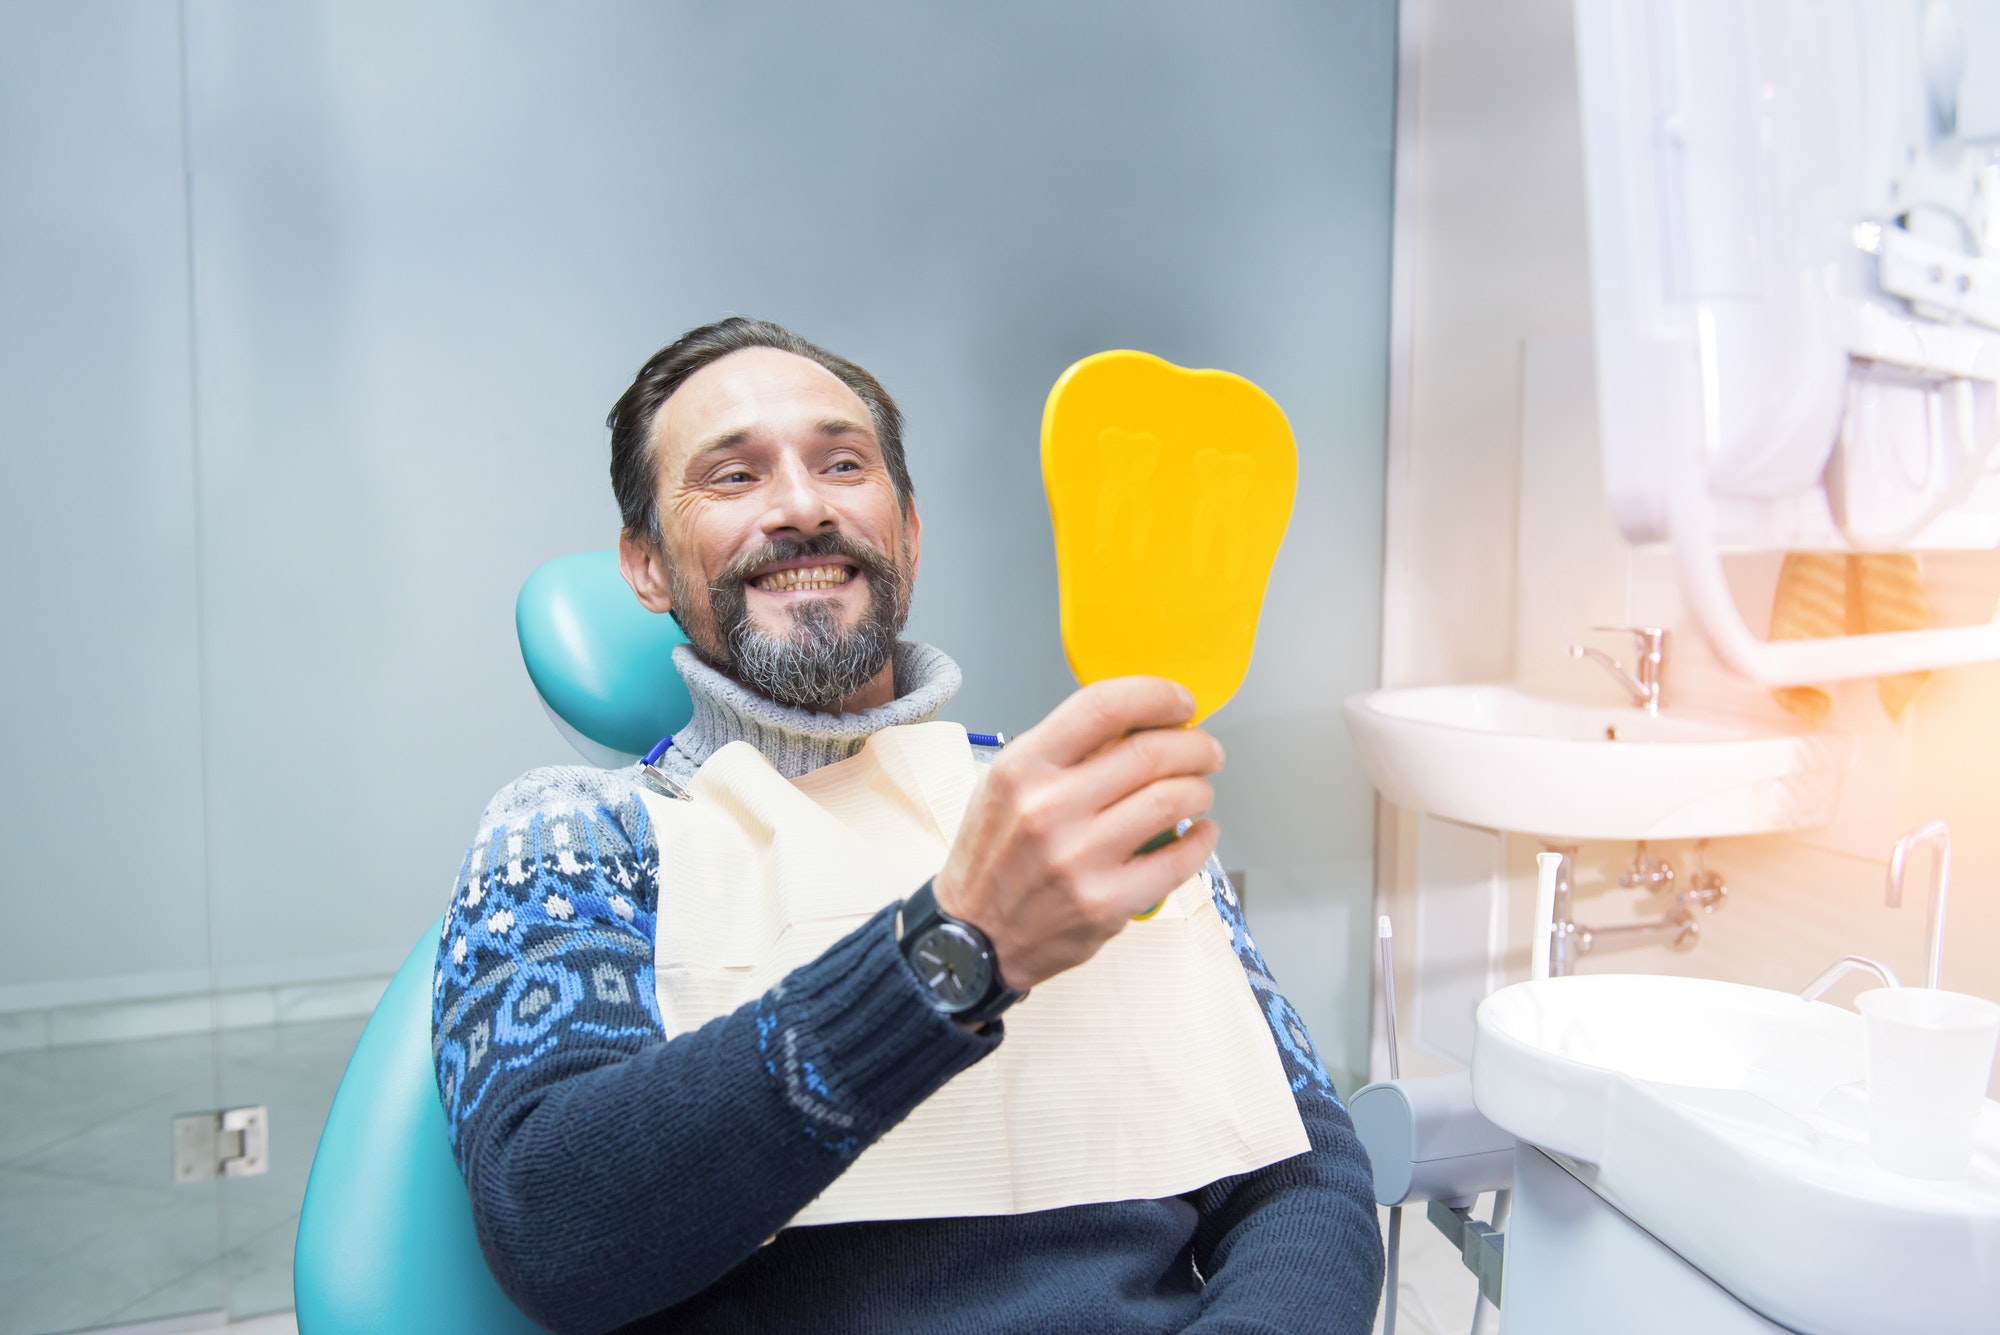 Man in dental chair